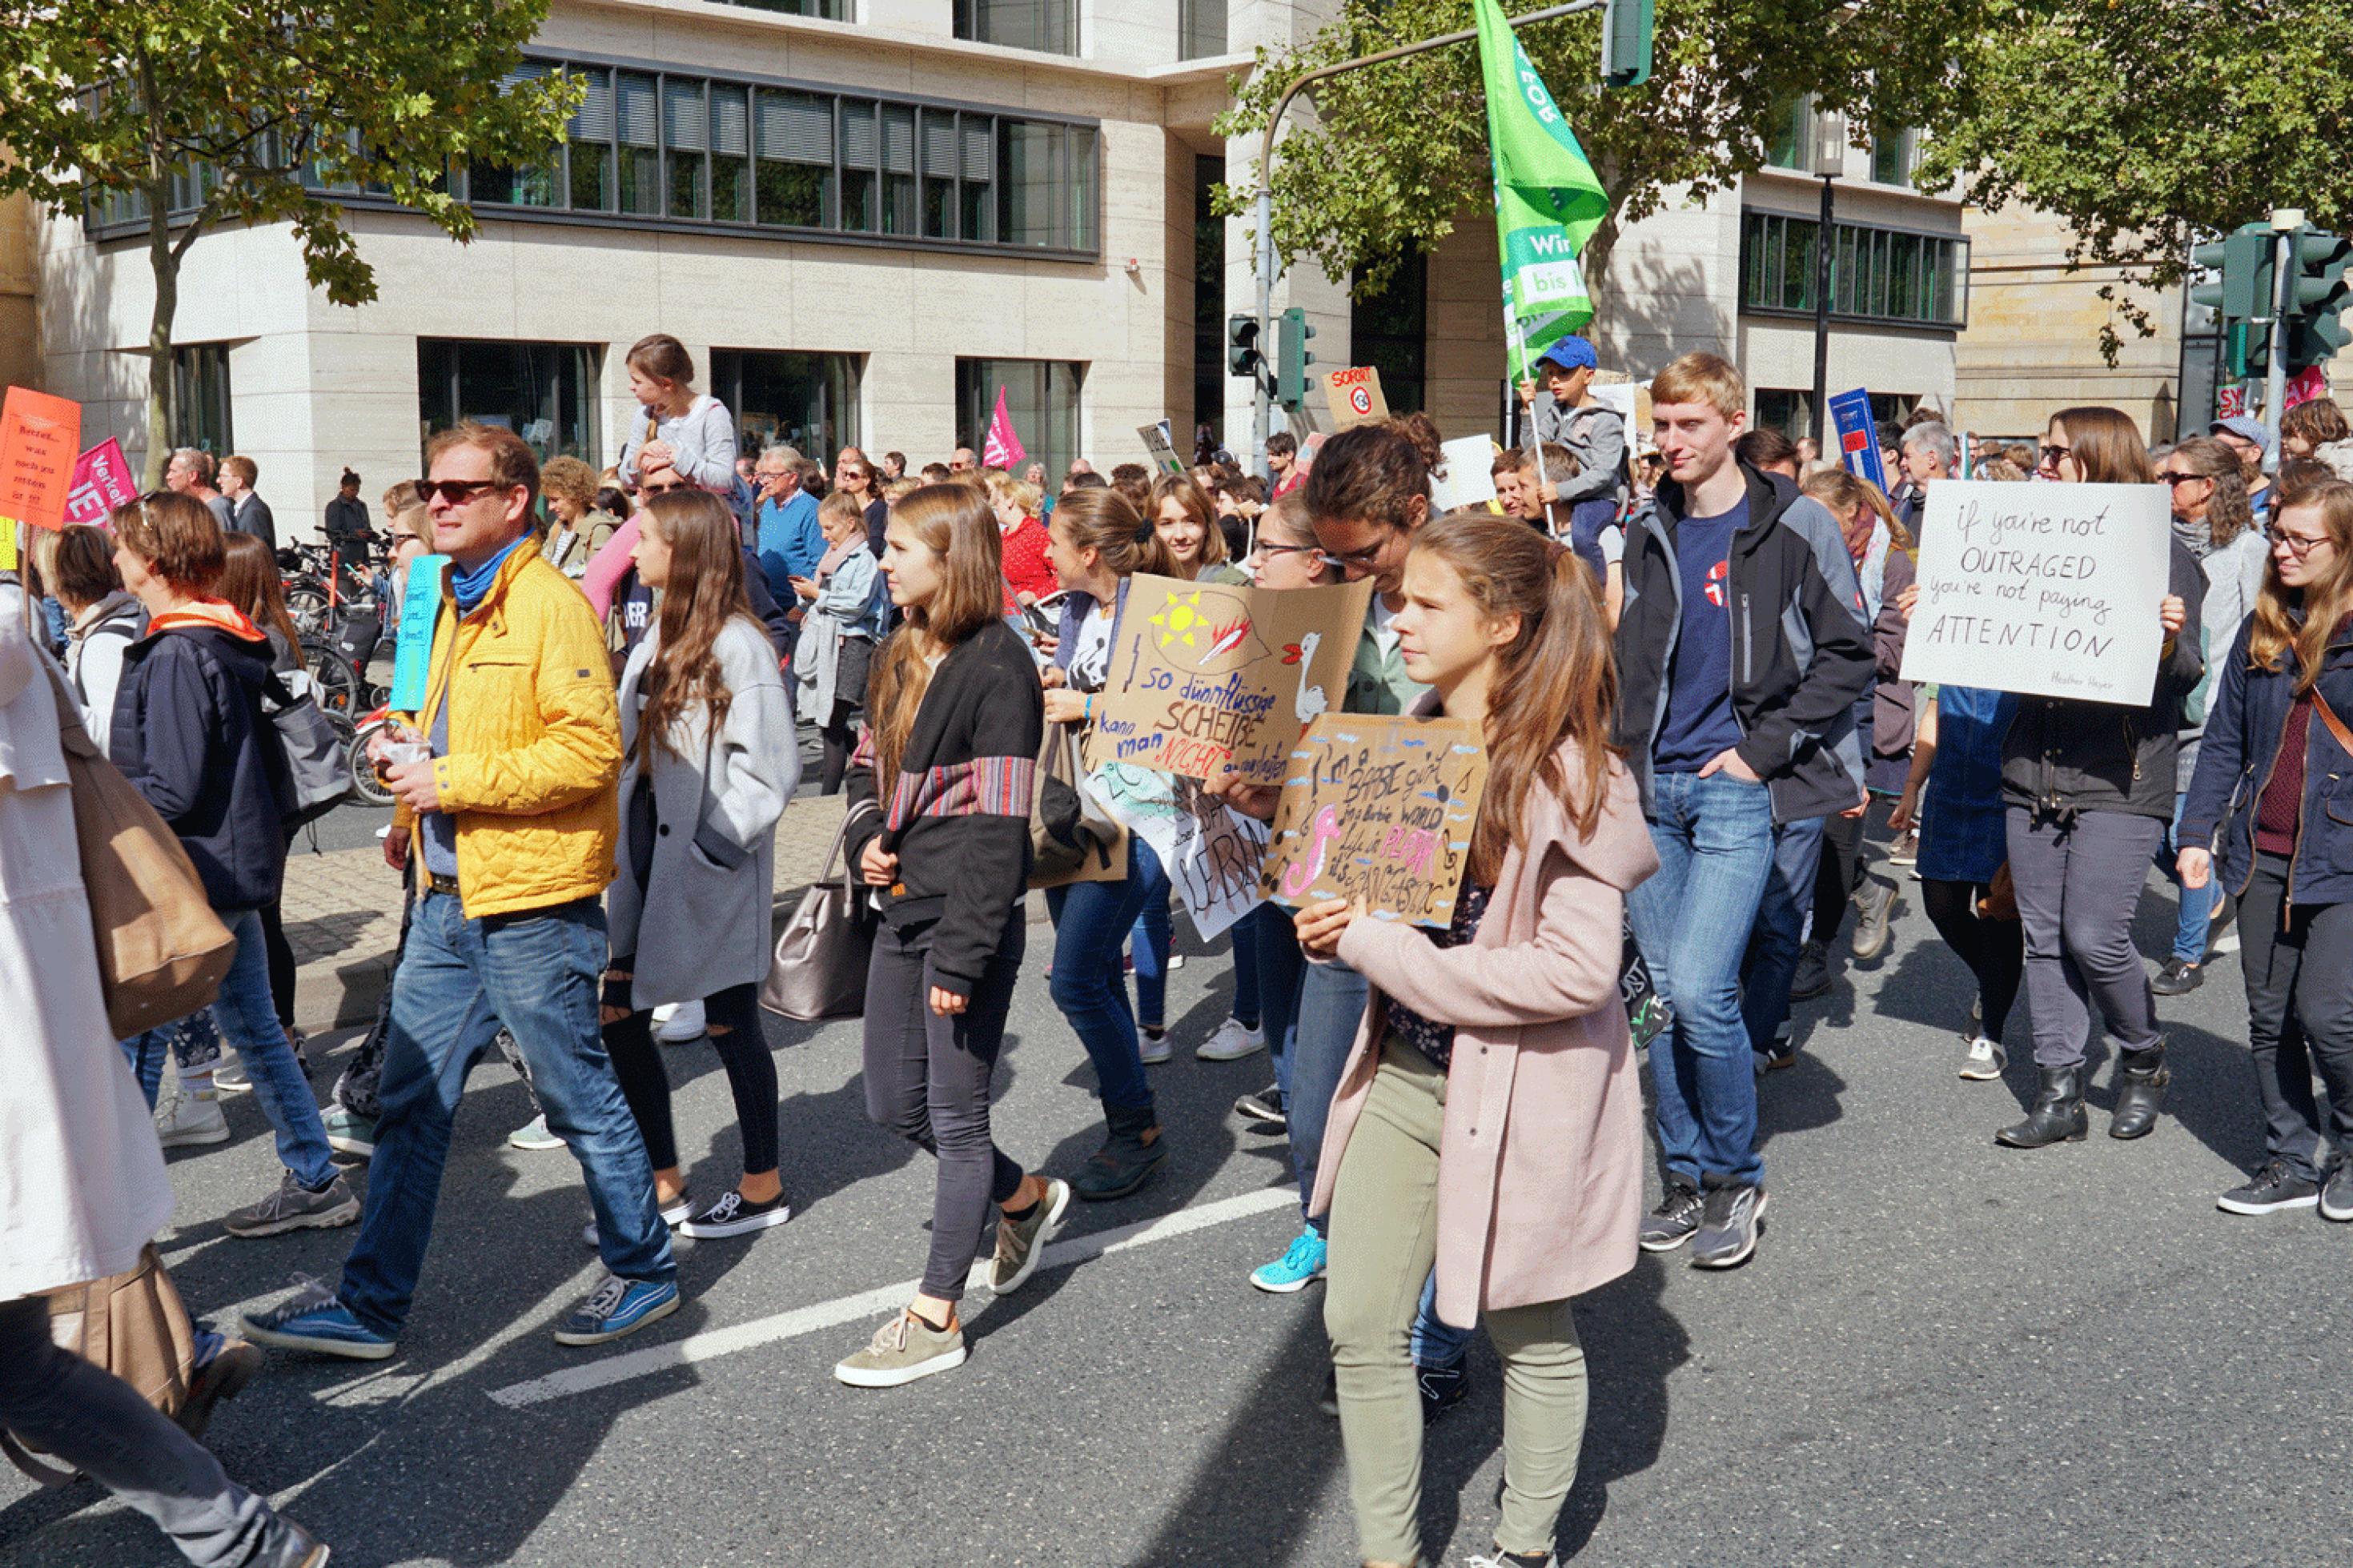 Eine große Gruppe Jugendlicher demonstriet, geht mit Slogans auf Pappschildern und Fahnen auf der Straße einer stadt.